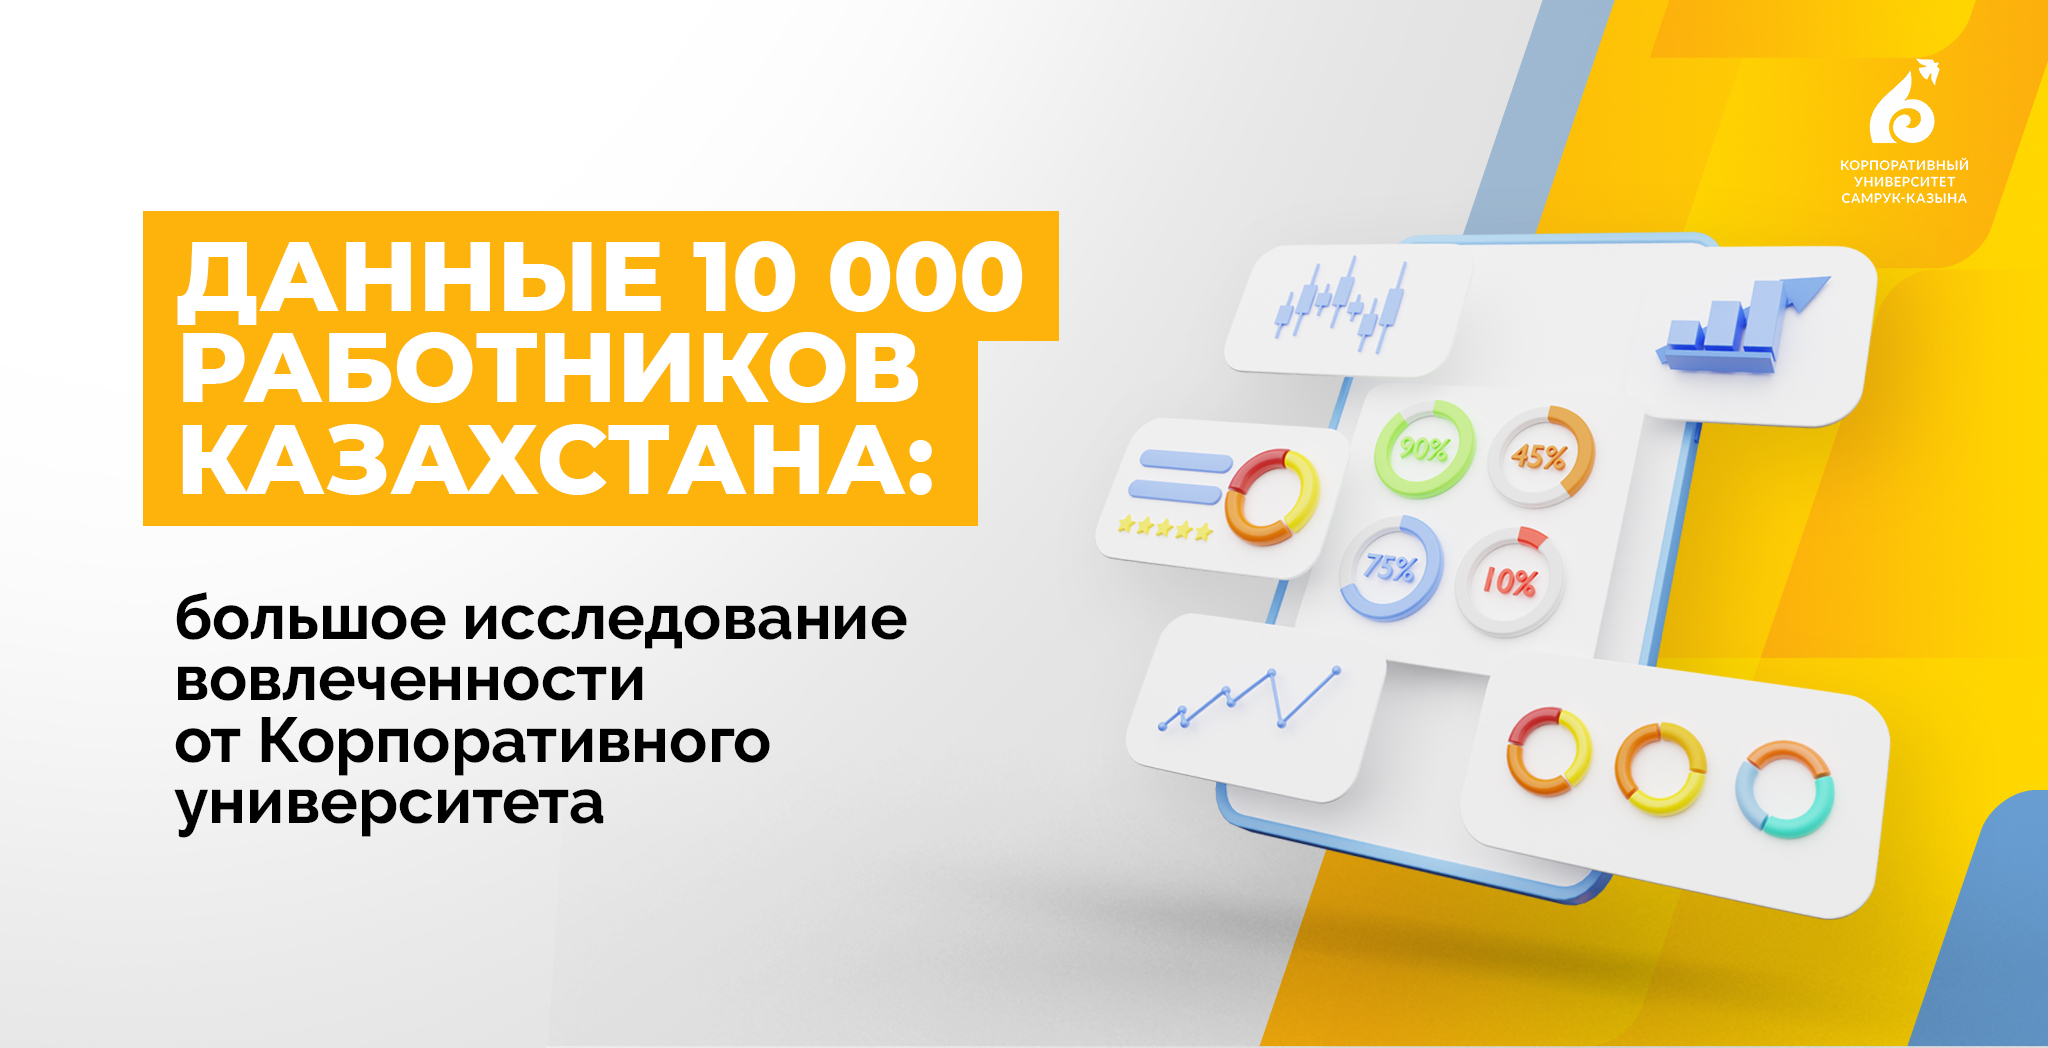 Данные 10 000 работников Казахстана: большое исследование вовлеченности от Корпоративного университета 